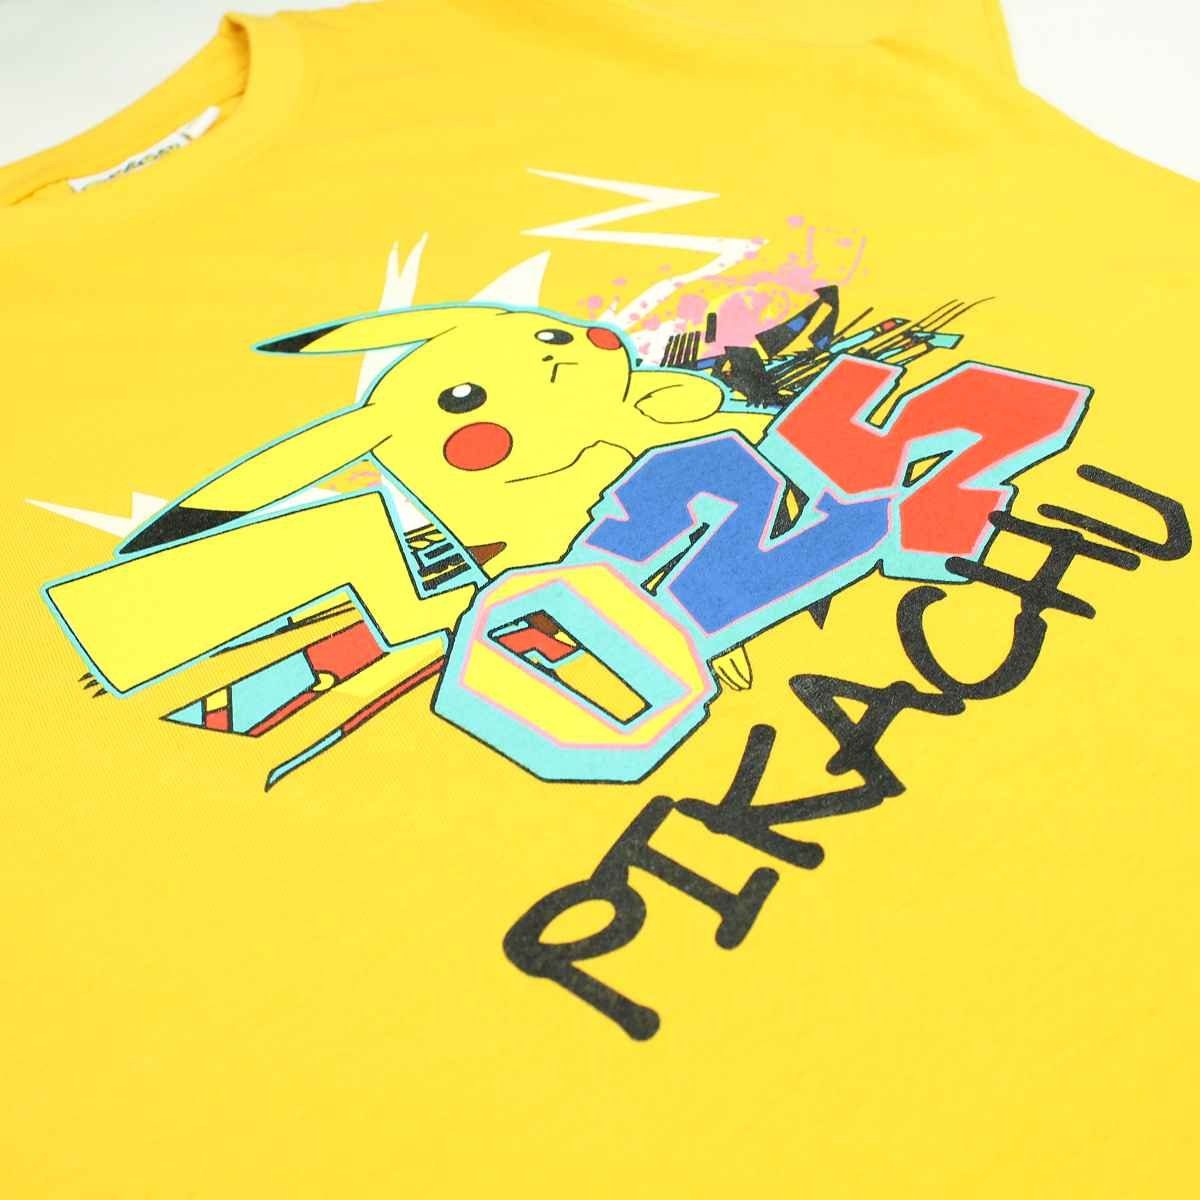 POKÉMON in 140-176 Größe cm Jungen Kurzarmshirt T-Shirt Pikachu Gelb